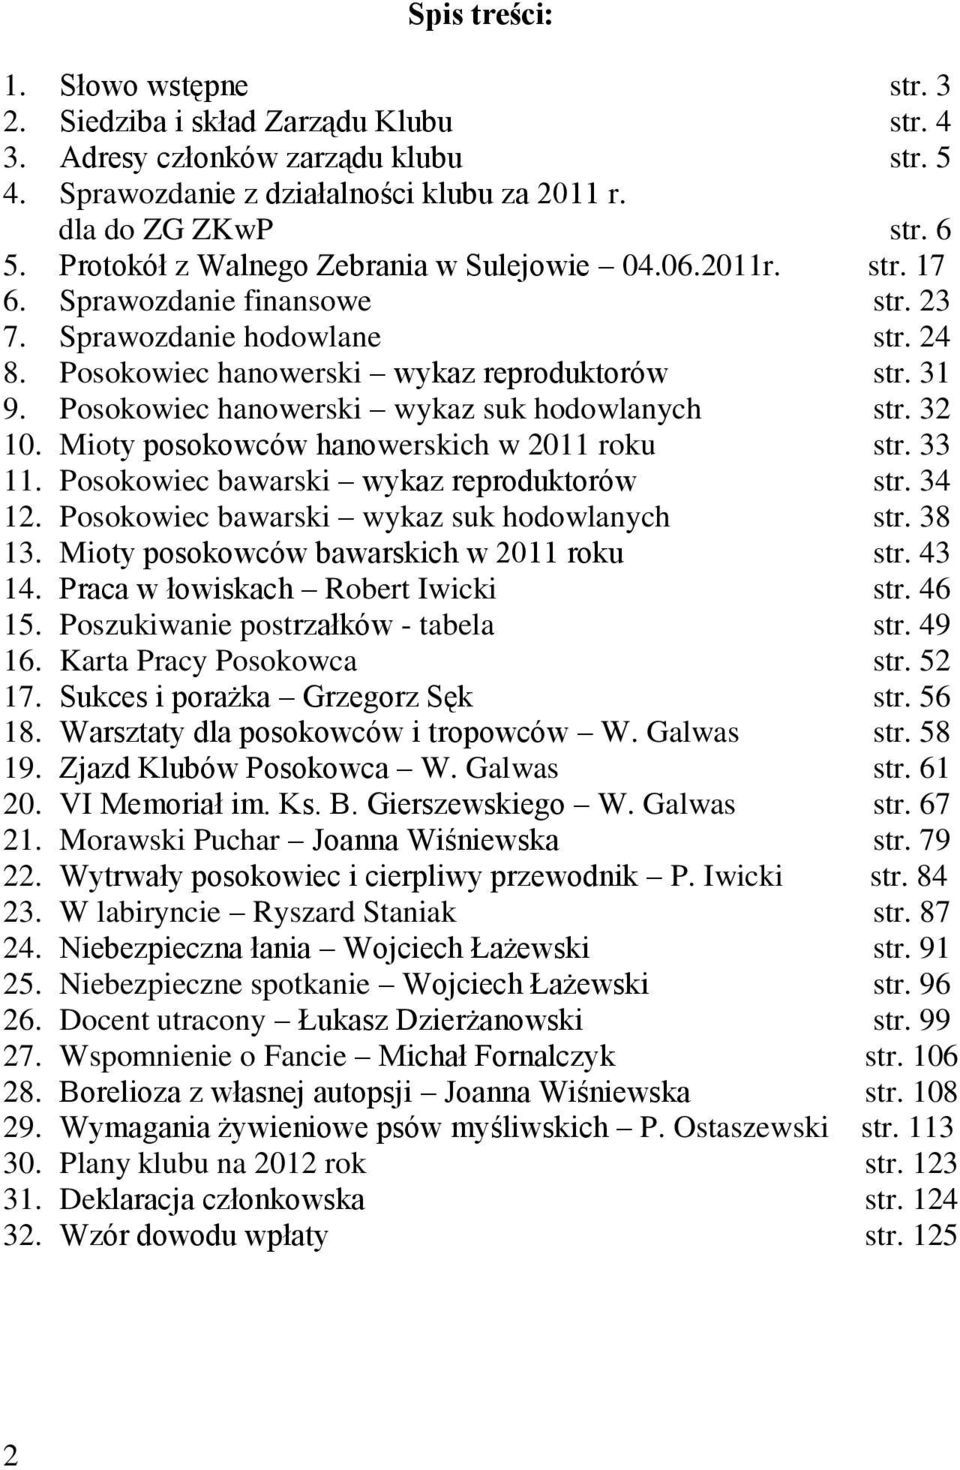 Posokowiec hanowerski wykaz suk hodowlanych str. 32 10. Mioty posokowców hanowerskich w 2011 roku str. 33 11. Posokowiec bawarski wykaz reproduktorów str. 34 12.